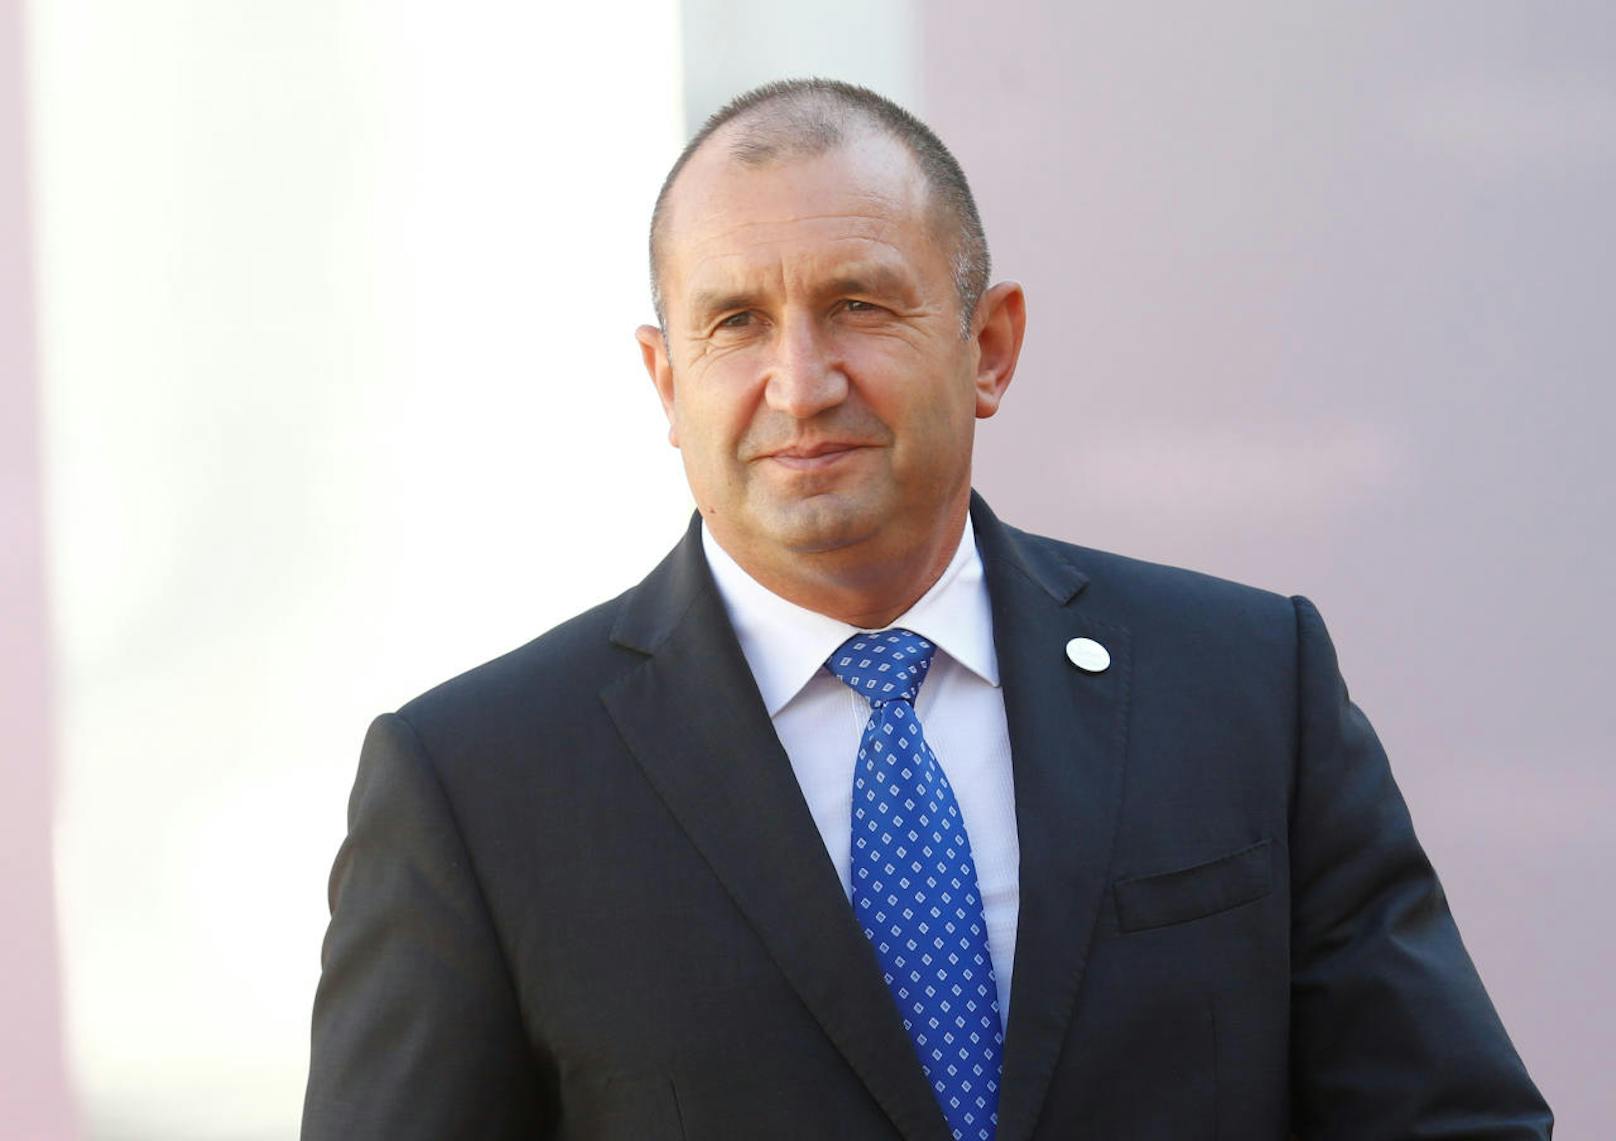 <b>Platz 36: Bulgarien</b>
Der bulgarische Präsident Rumen Radev bekommt <b>57.000 Euro</b> pro Jahr gezahlt. Die bulgarische Bevölkerung verdient jährlich im Schnitt 17.800 Euro